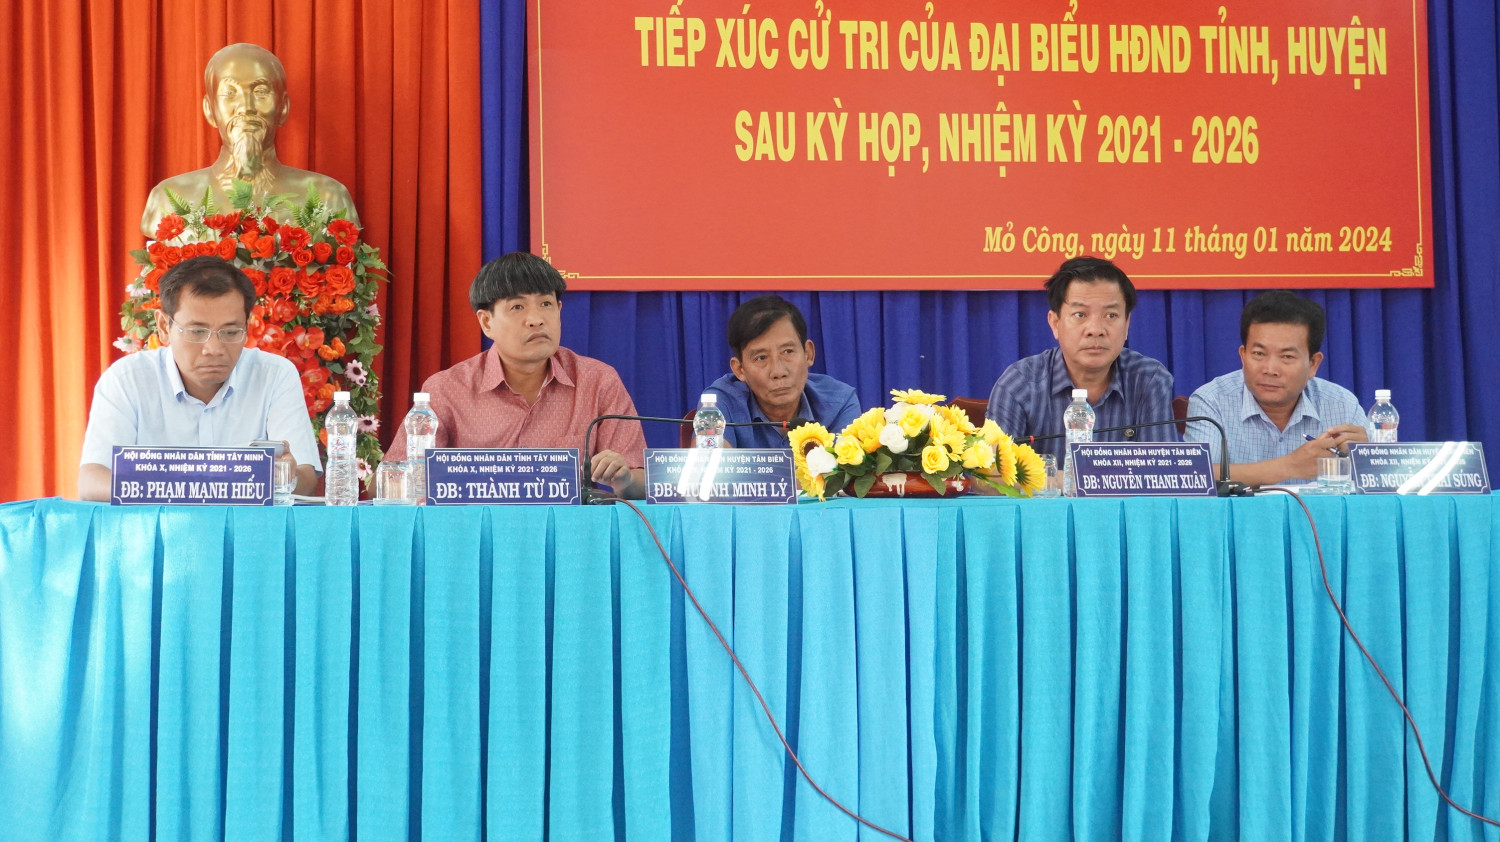 Đại biểu HĐND tỉnh, huyện Tiếp xúc cử tri xã Mỏ Công sau kỳ họp